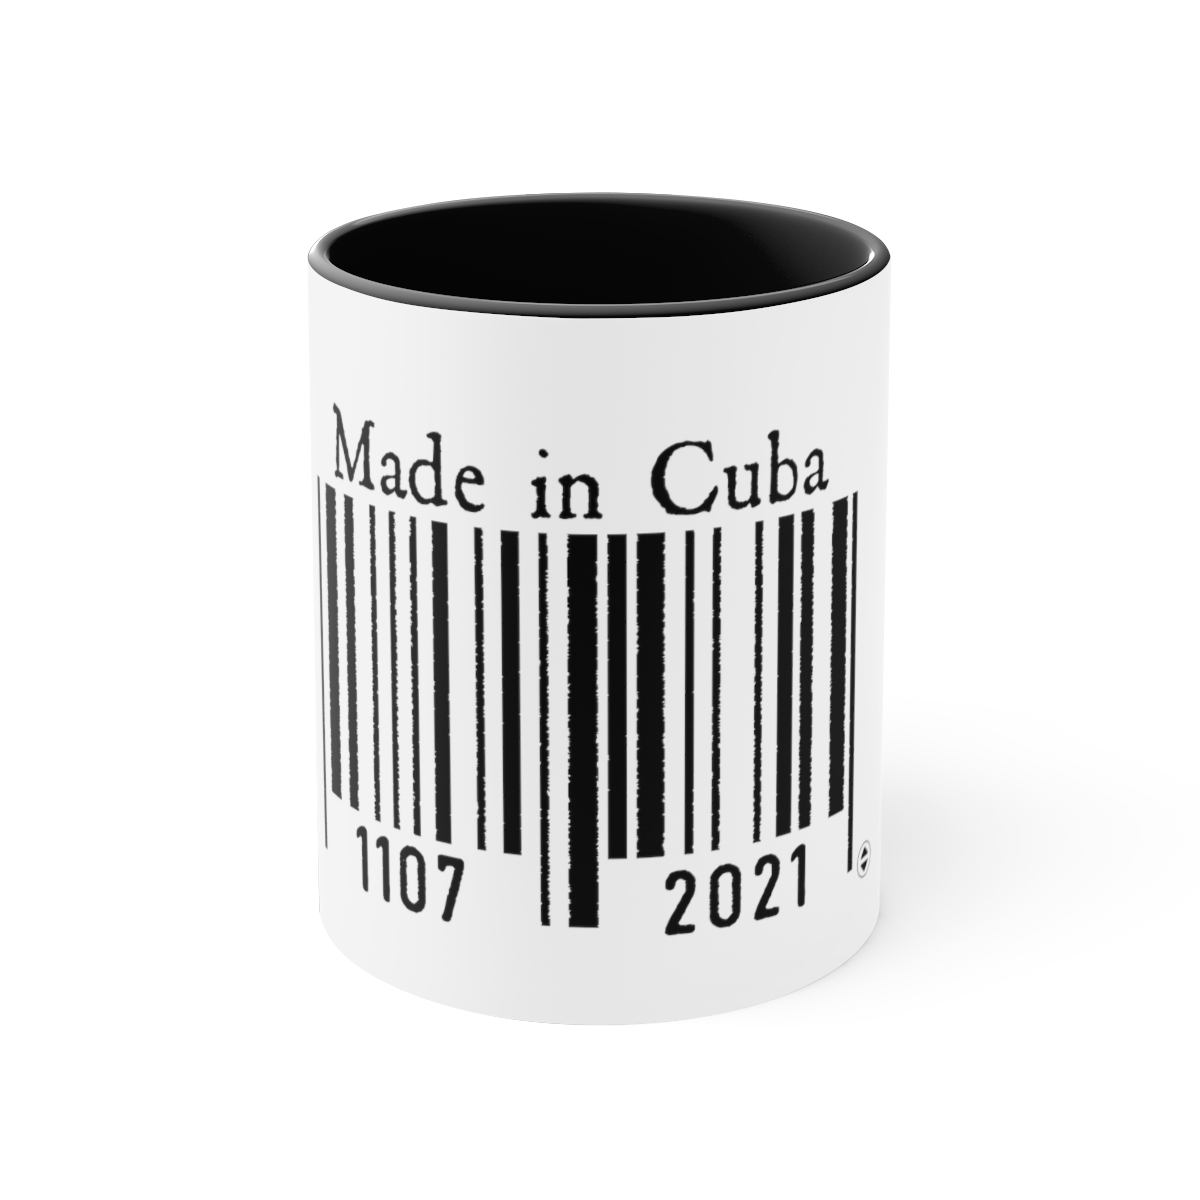 MADE IN CUBA in black | Taza de cerámica de colores, 11oz